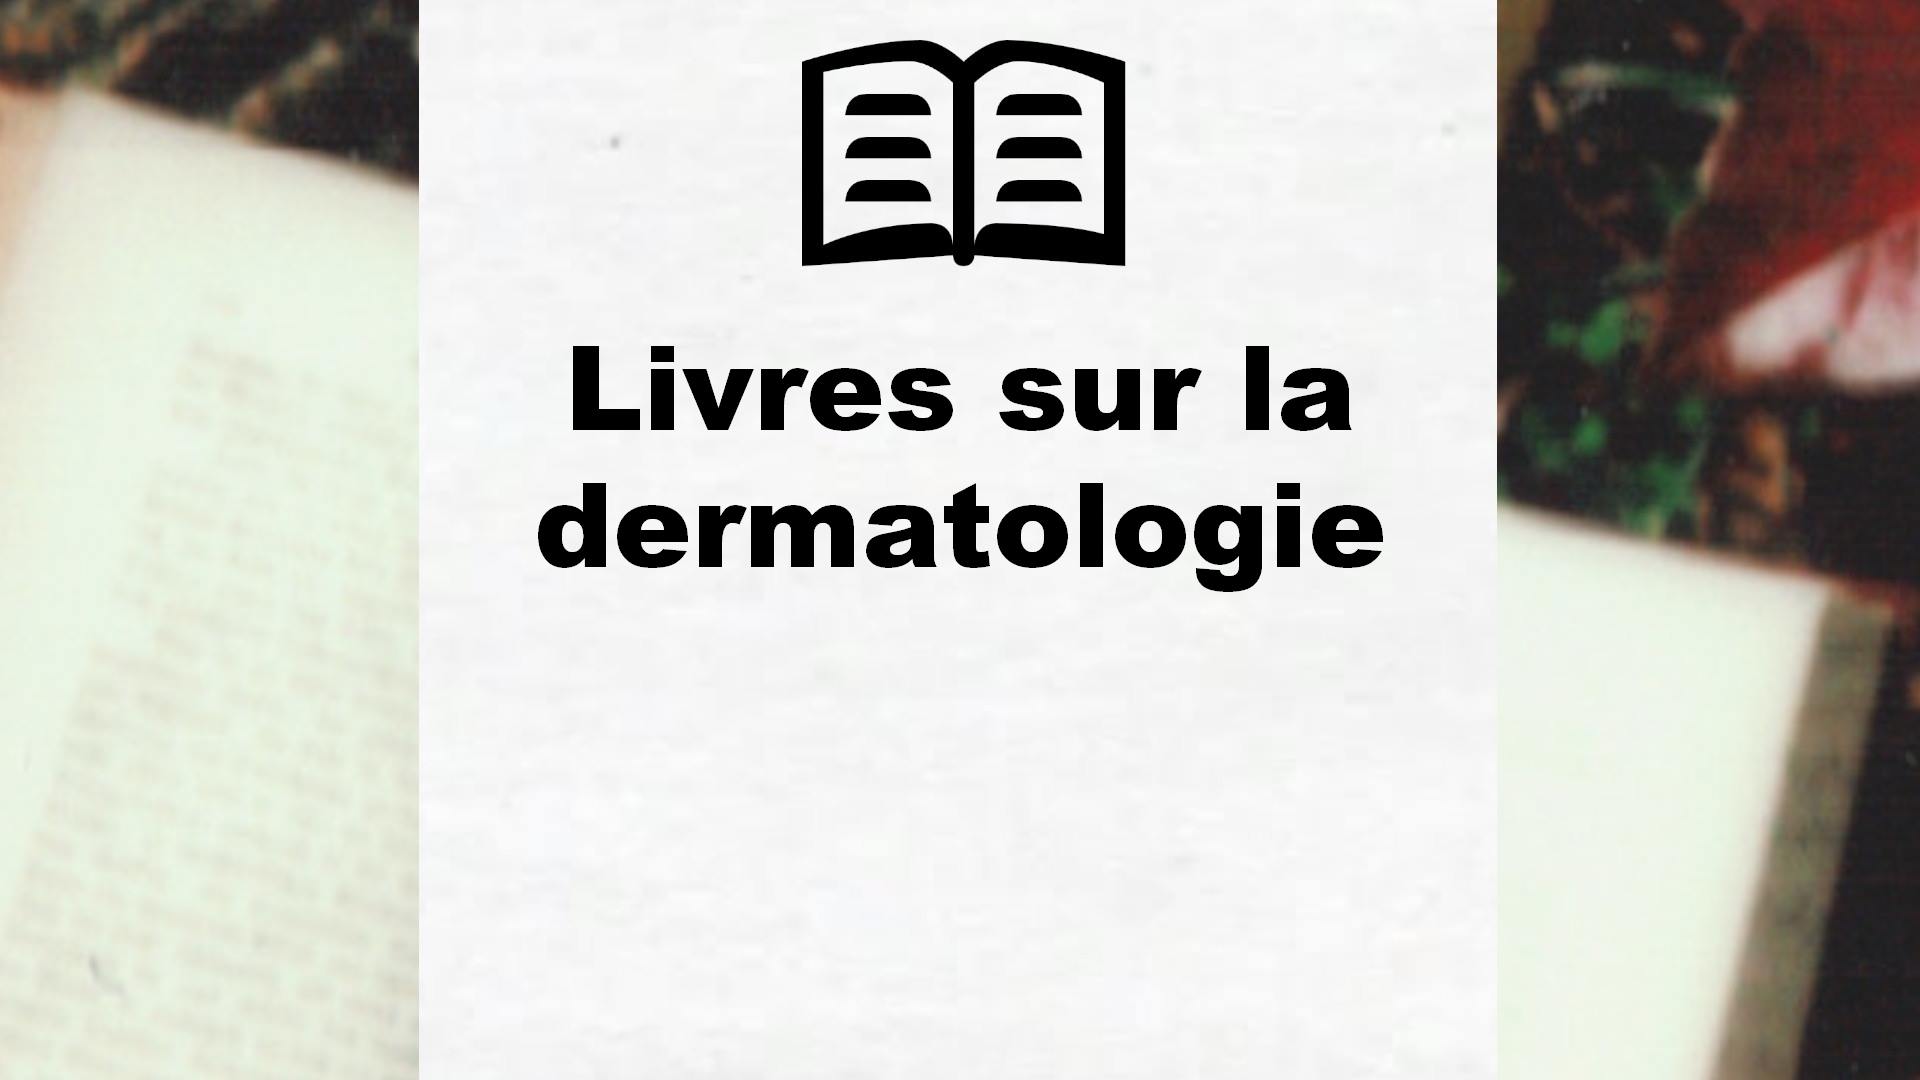 Livres sur la dermatologie